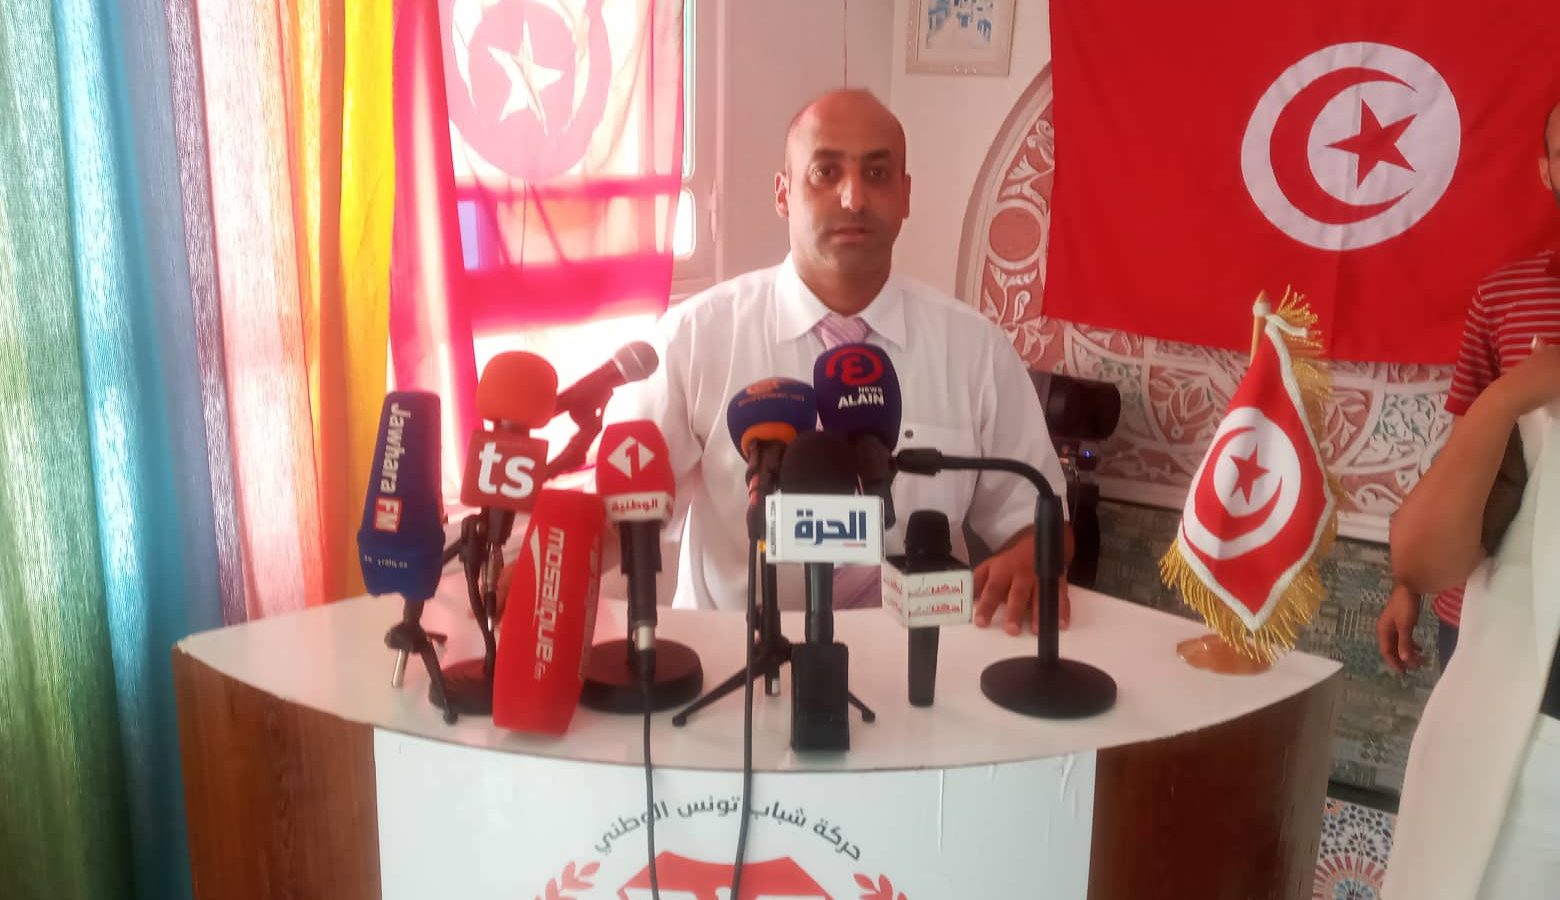 الناطق باسم 25 جويلية لـ”تونس الان”: وزير سابق متهم بسرقة 100 مليار والملف اختفى من المحكمة